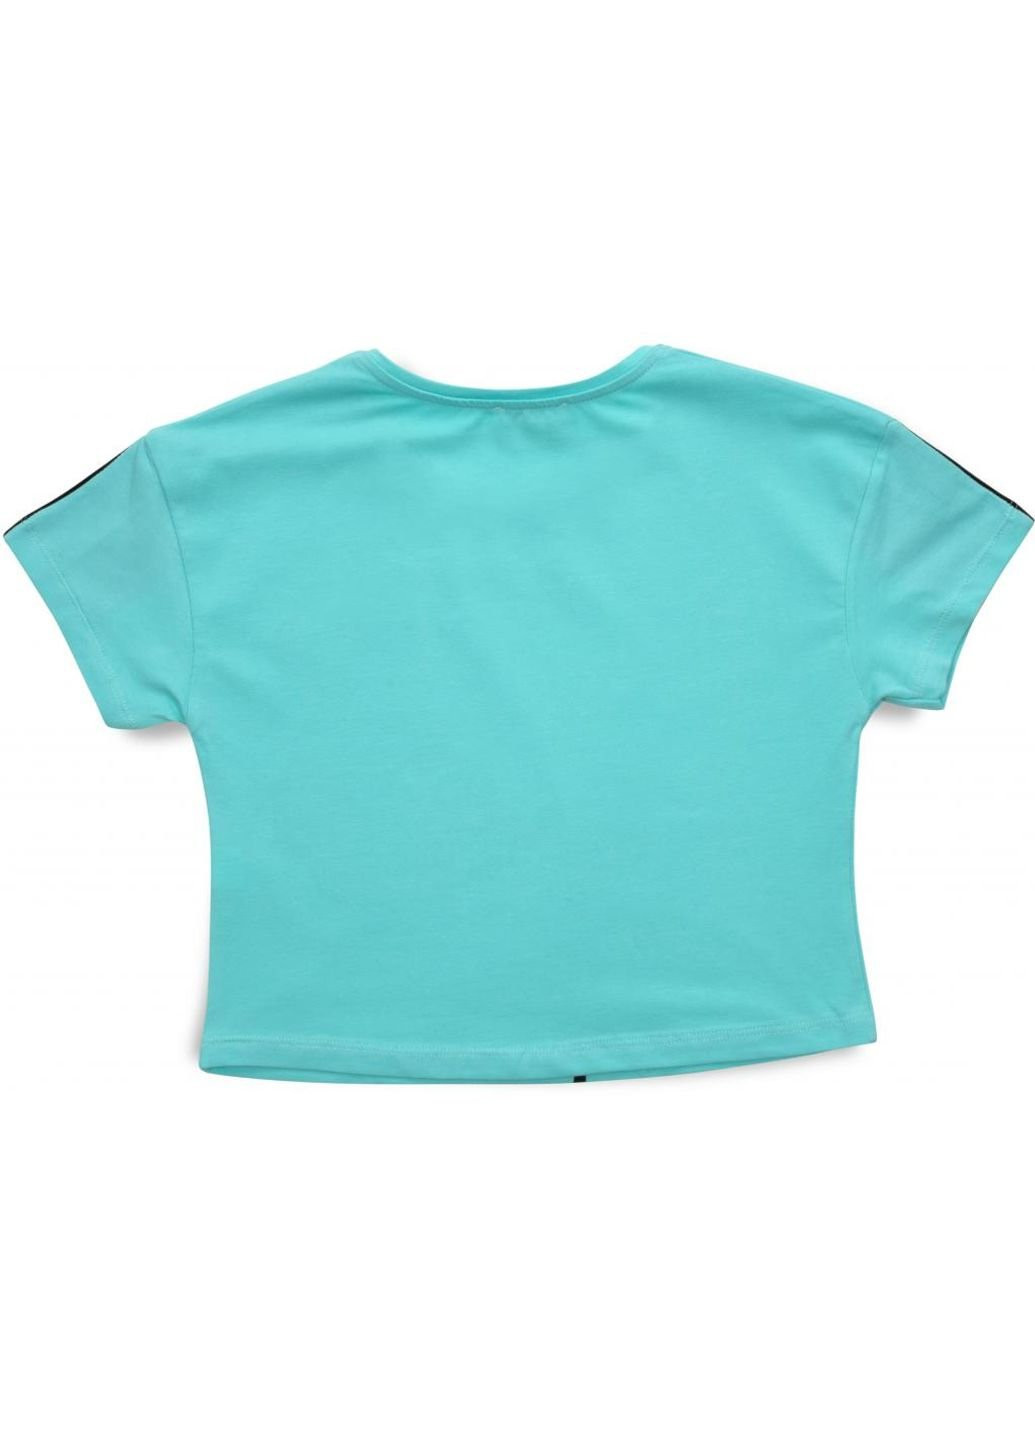 Мятная демисезонная футболка детская с мишкой (3023-164g-green) Matilda